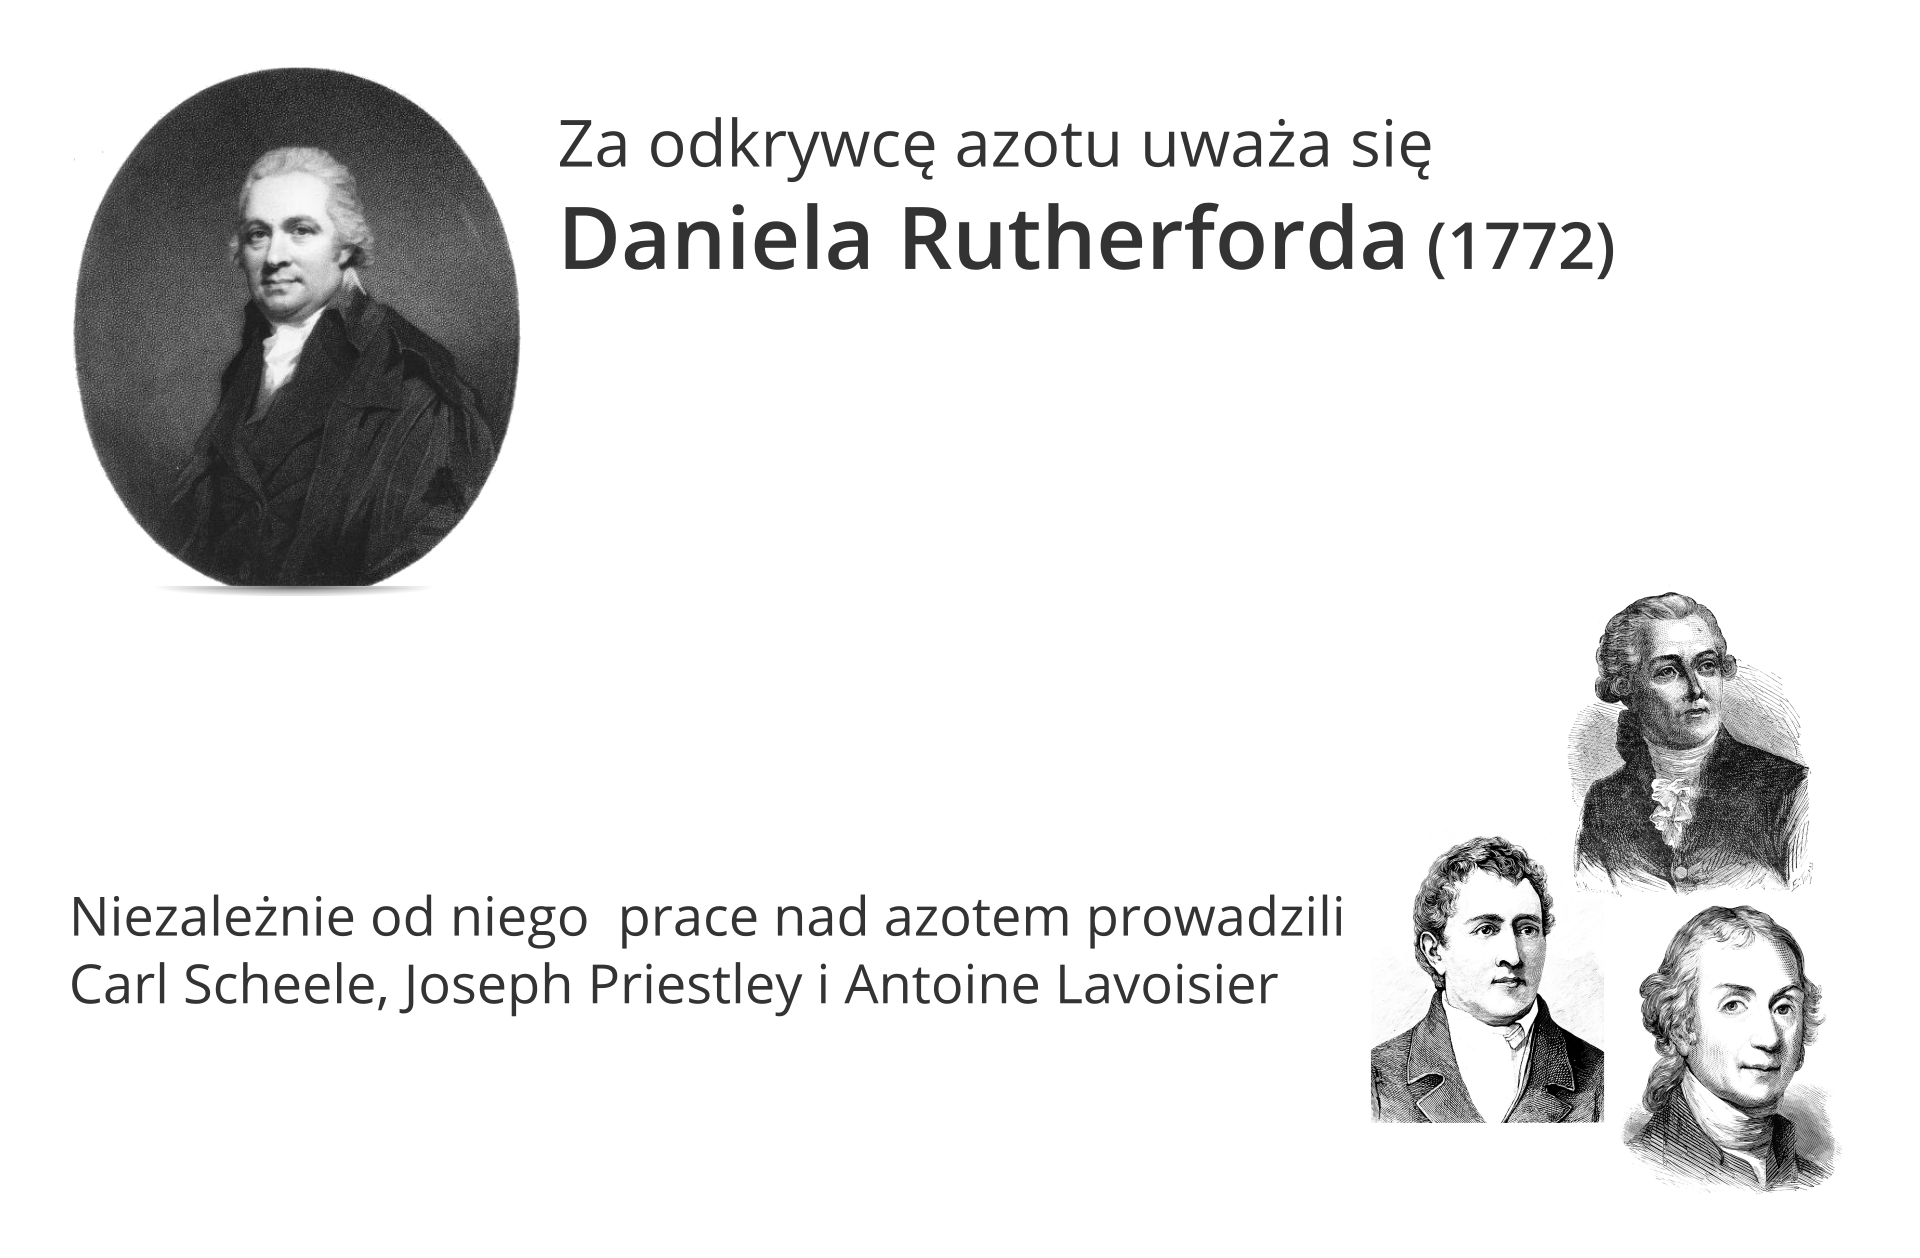 Ilustracja w lewym górnym narożniku zawiera czarnobiały portret Daniela Rutherforda, którego, jak głosi napis po prawej stronie, uznano ostatecznie za odkrywcę azotu. Dokonał on tego w 1772 roku. Poniżej po prawej stronie znajdują się kolejne czarnobiałe, nieco mniejsze portrety trzech mężczyzn. Napis po lewej stronie tego kolażu głosi: Niezależnie prace nad azotem prowadzili Carl Scheele, Joseph Priestley i Antoine Lavoisier.